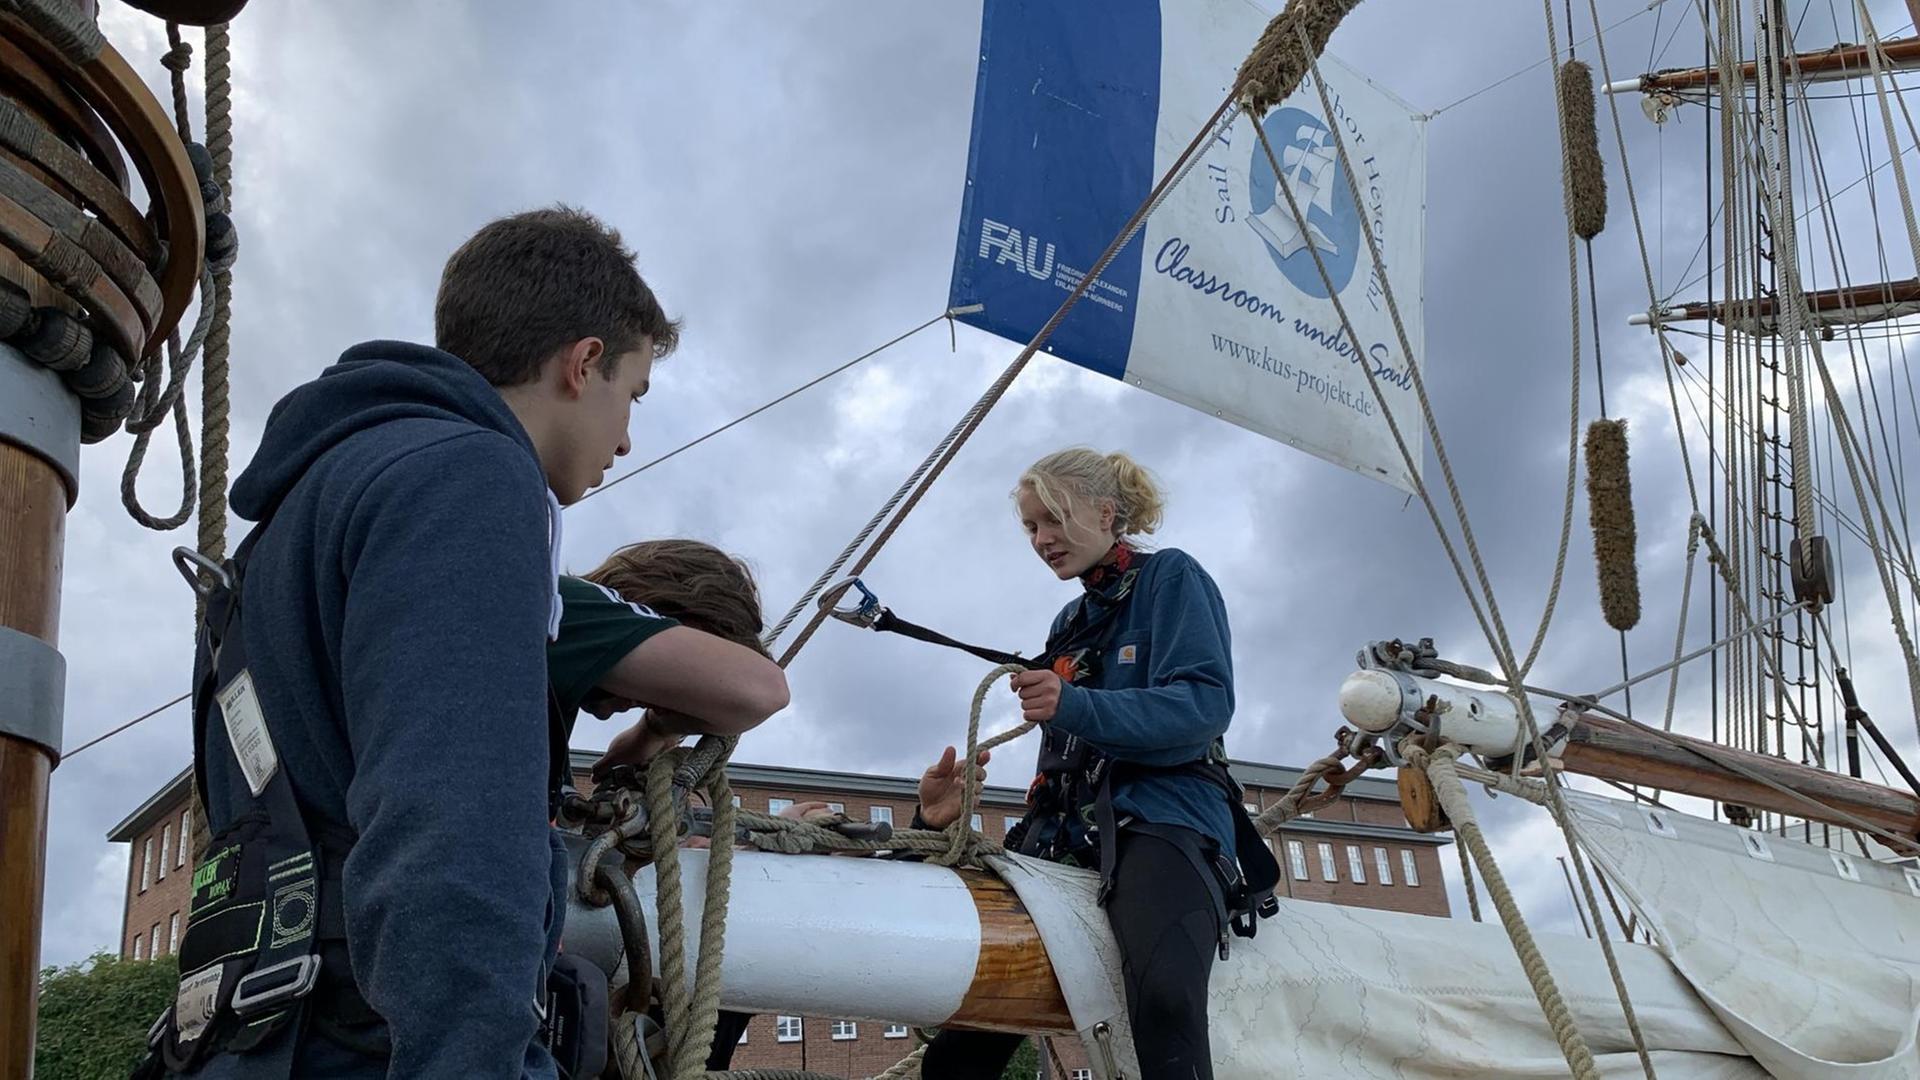 Schüler auf dem Segelschiff "Thor Heyerdahl" bei der Vorbereitung der Segel.